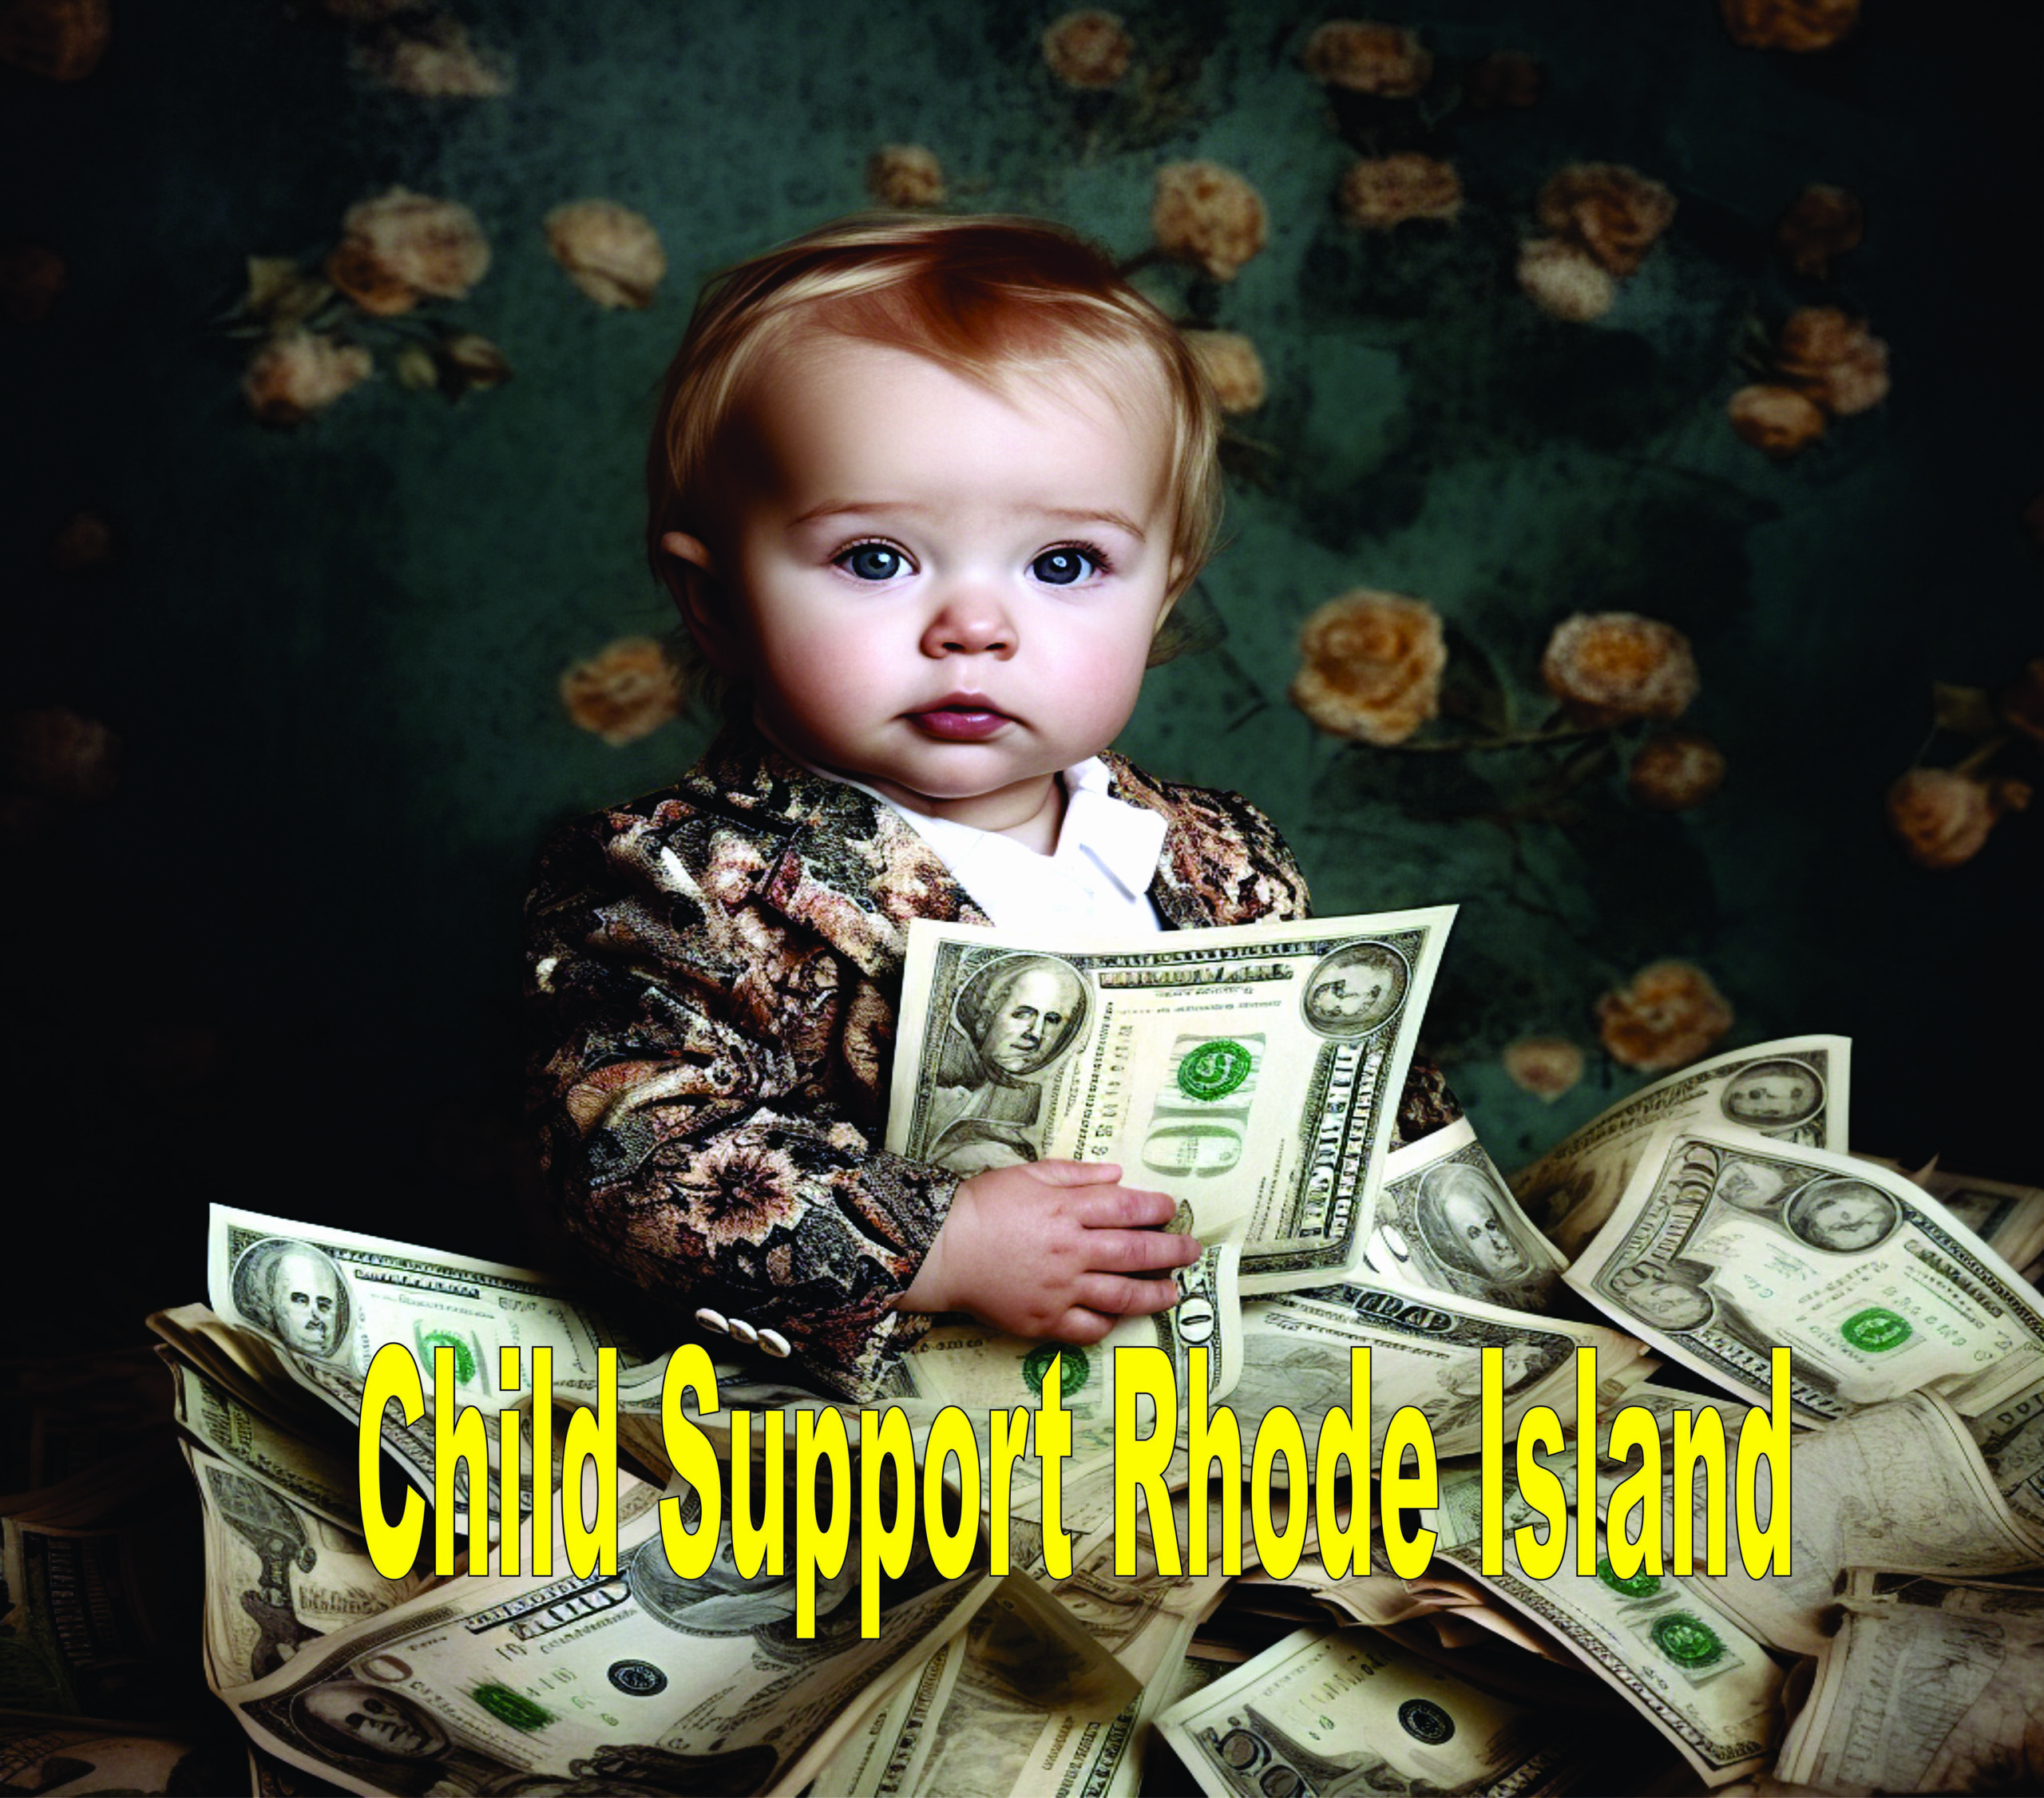 Child Support Rhode Island